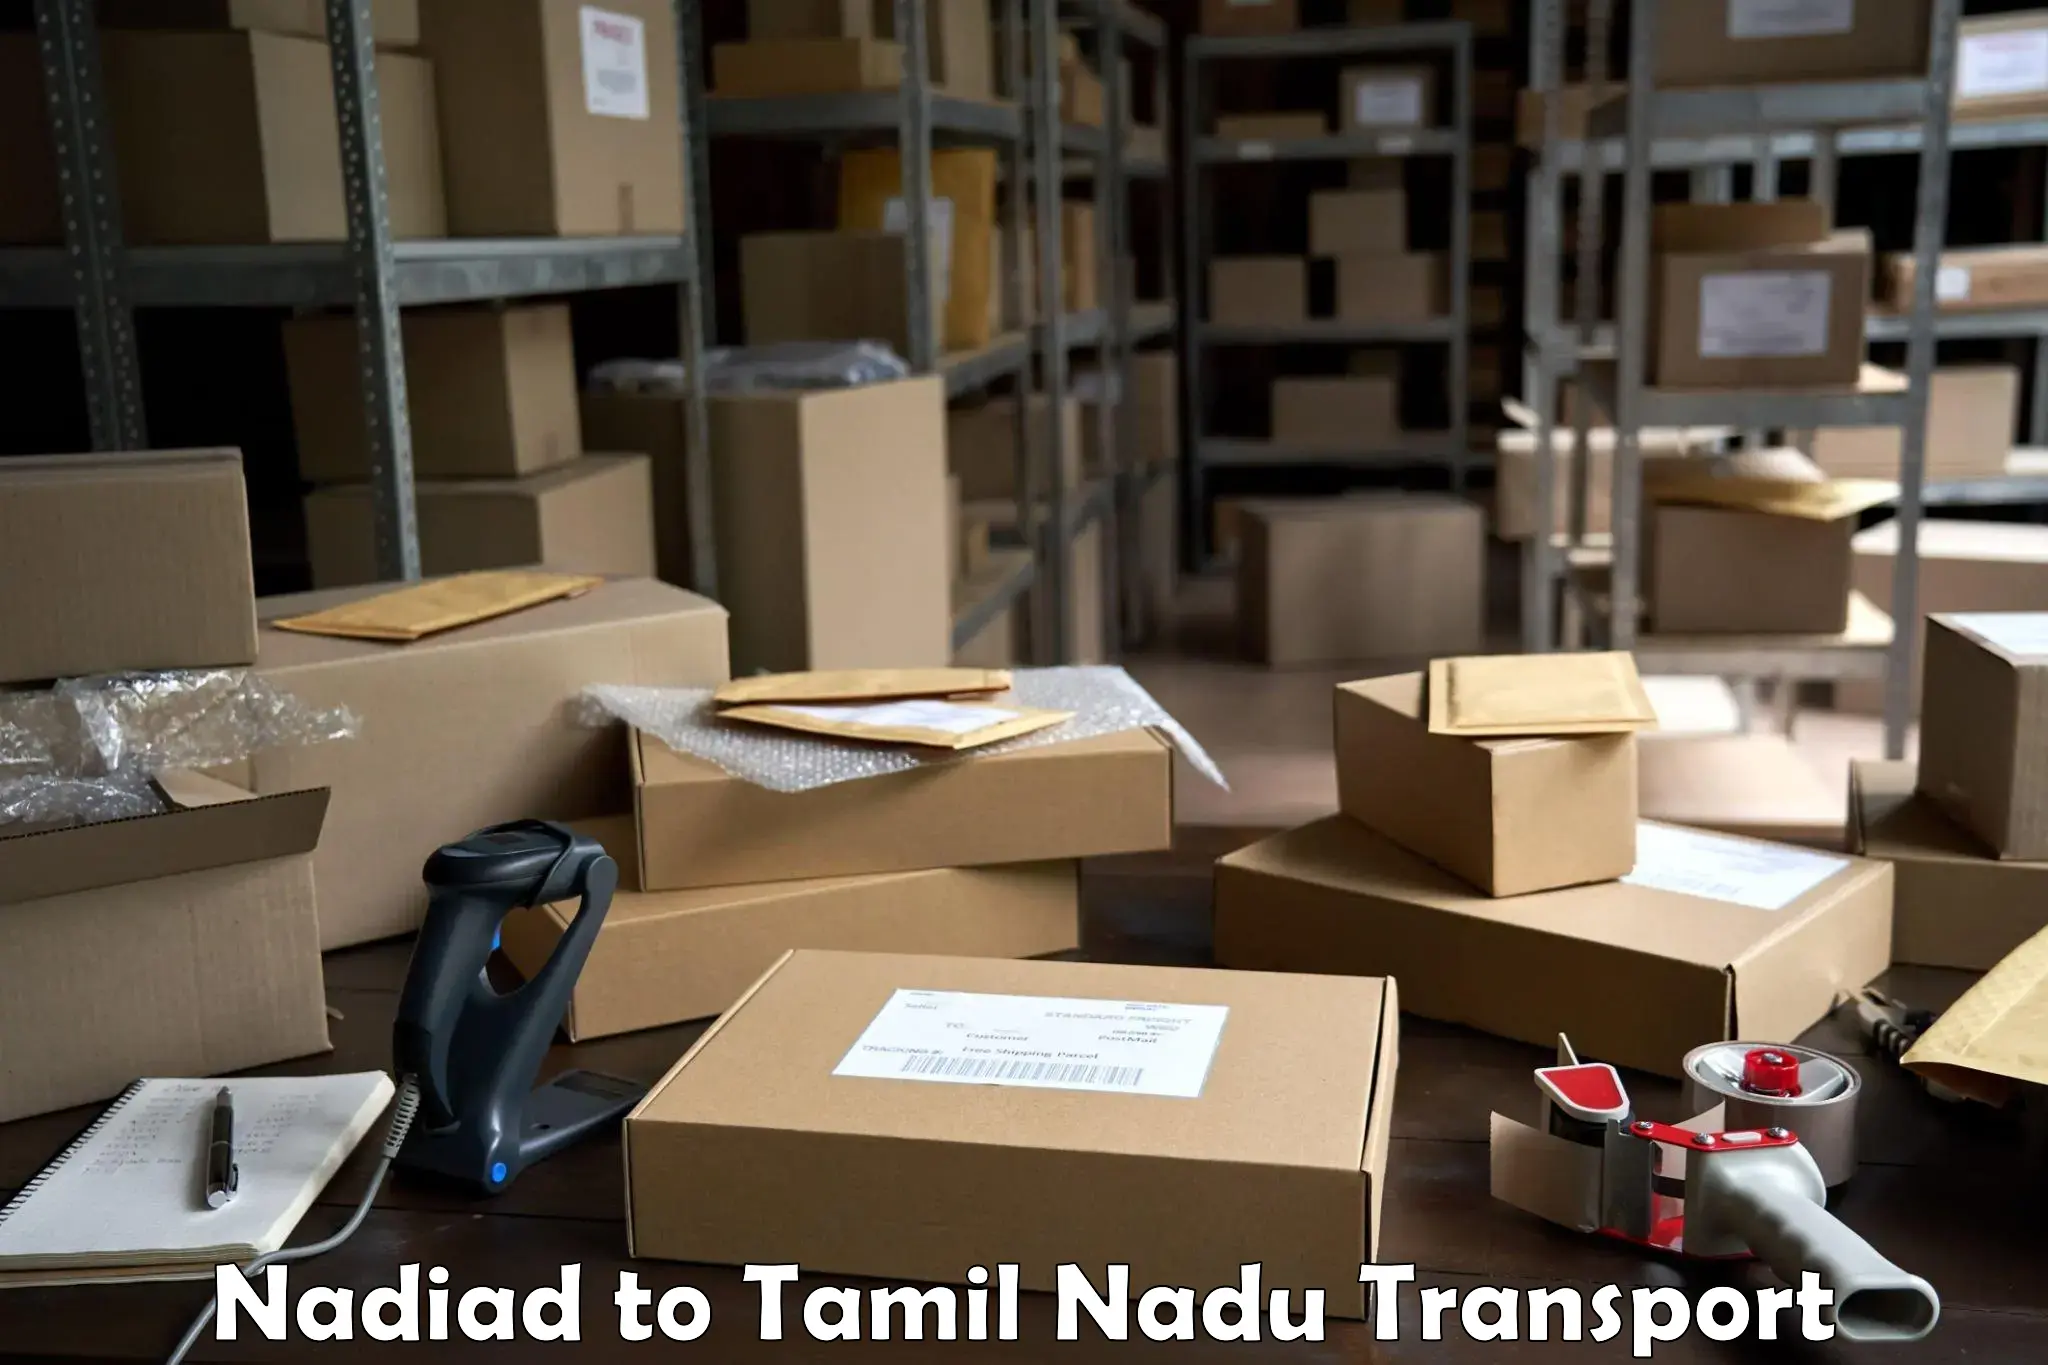 Goods delivery service Nadiad to Kodaikanal